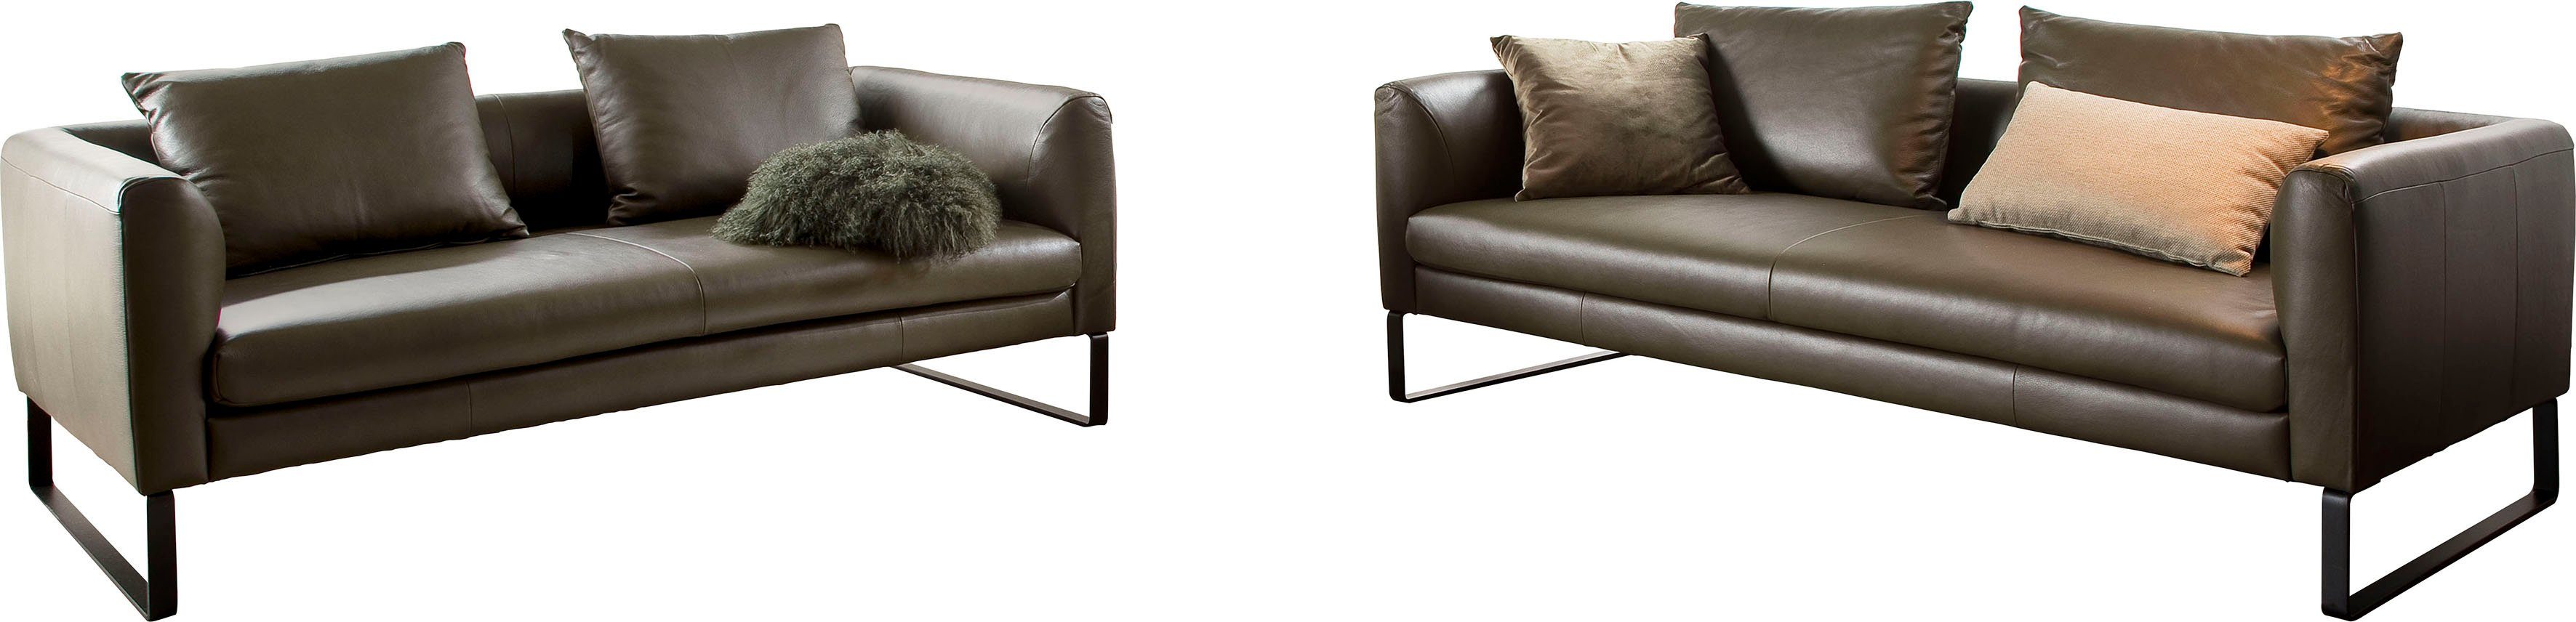 3C Candy Sofa, Sofaset bestehend aus 2,5-Sitzer und 3-Sitzer olive